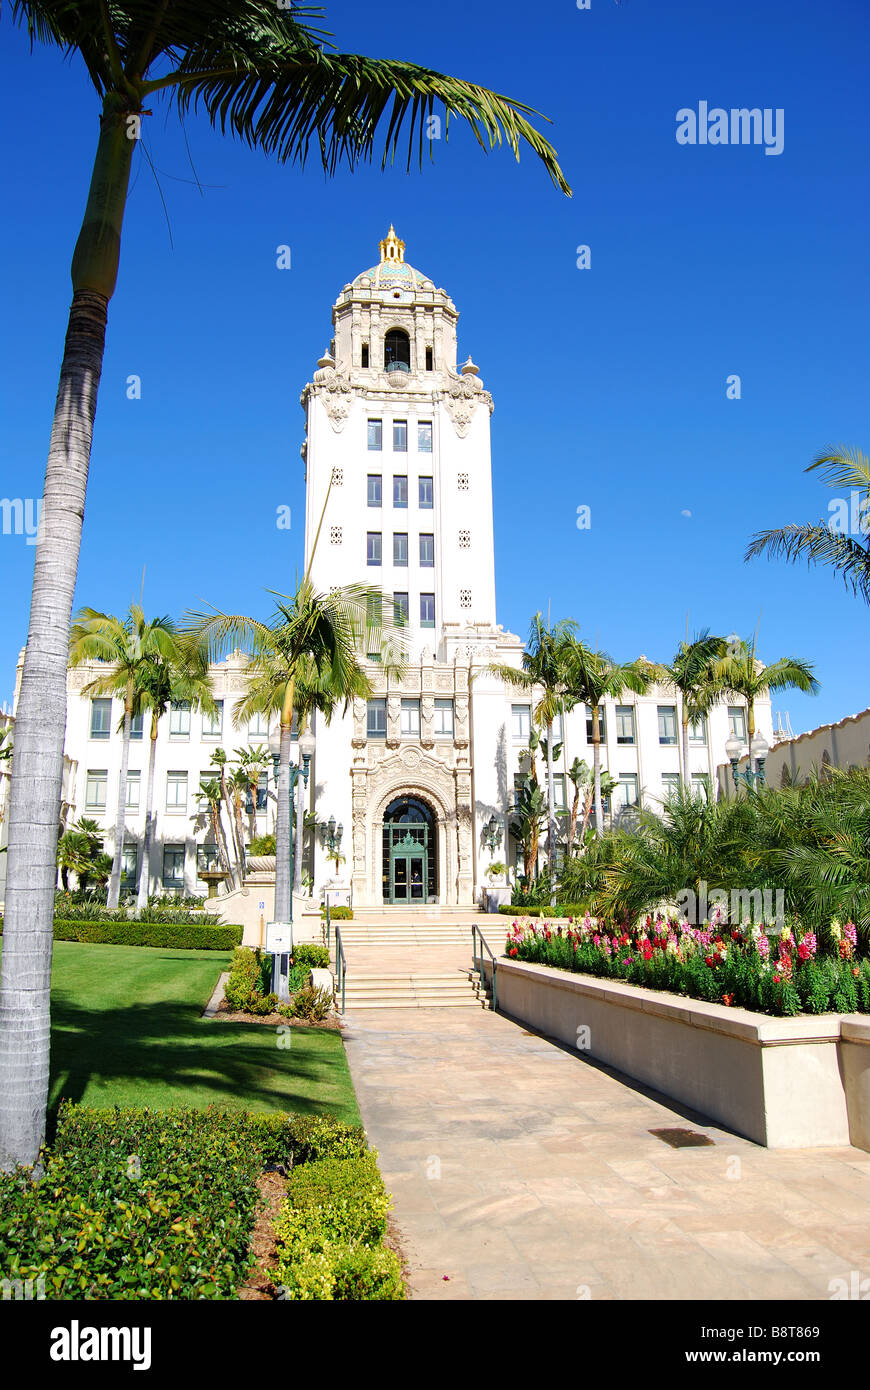 Los Angeles City Hall, N Rexford Drive, Beverly Hills, Los Angeles, Californie, États-Unis d'Amérique Banque D'Images